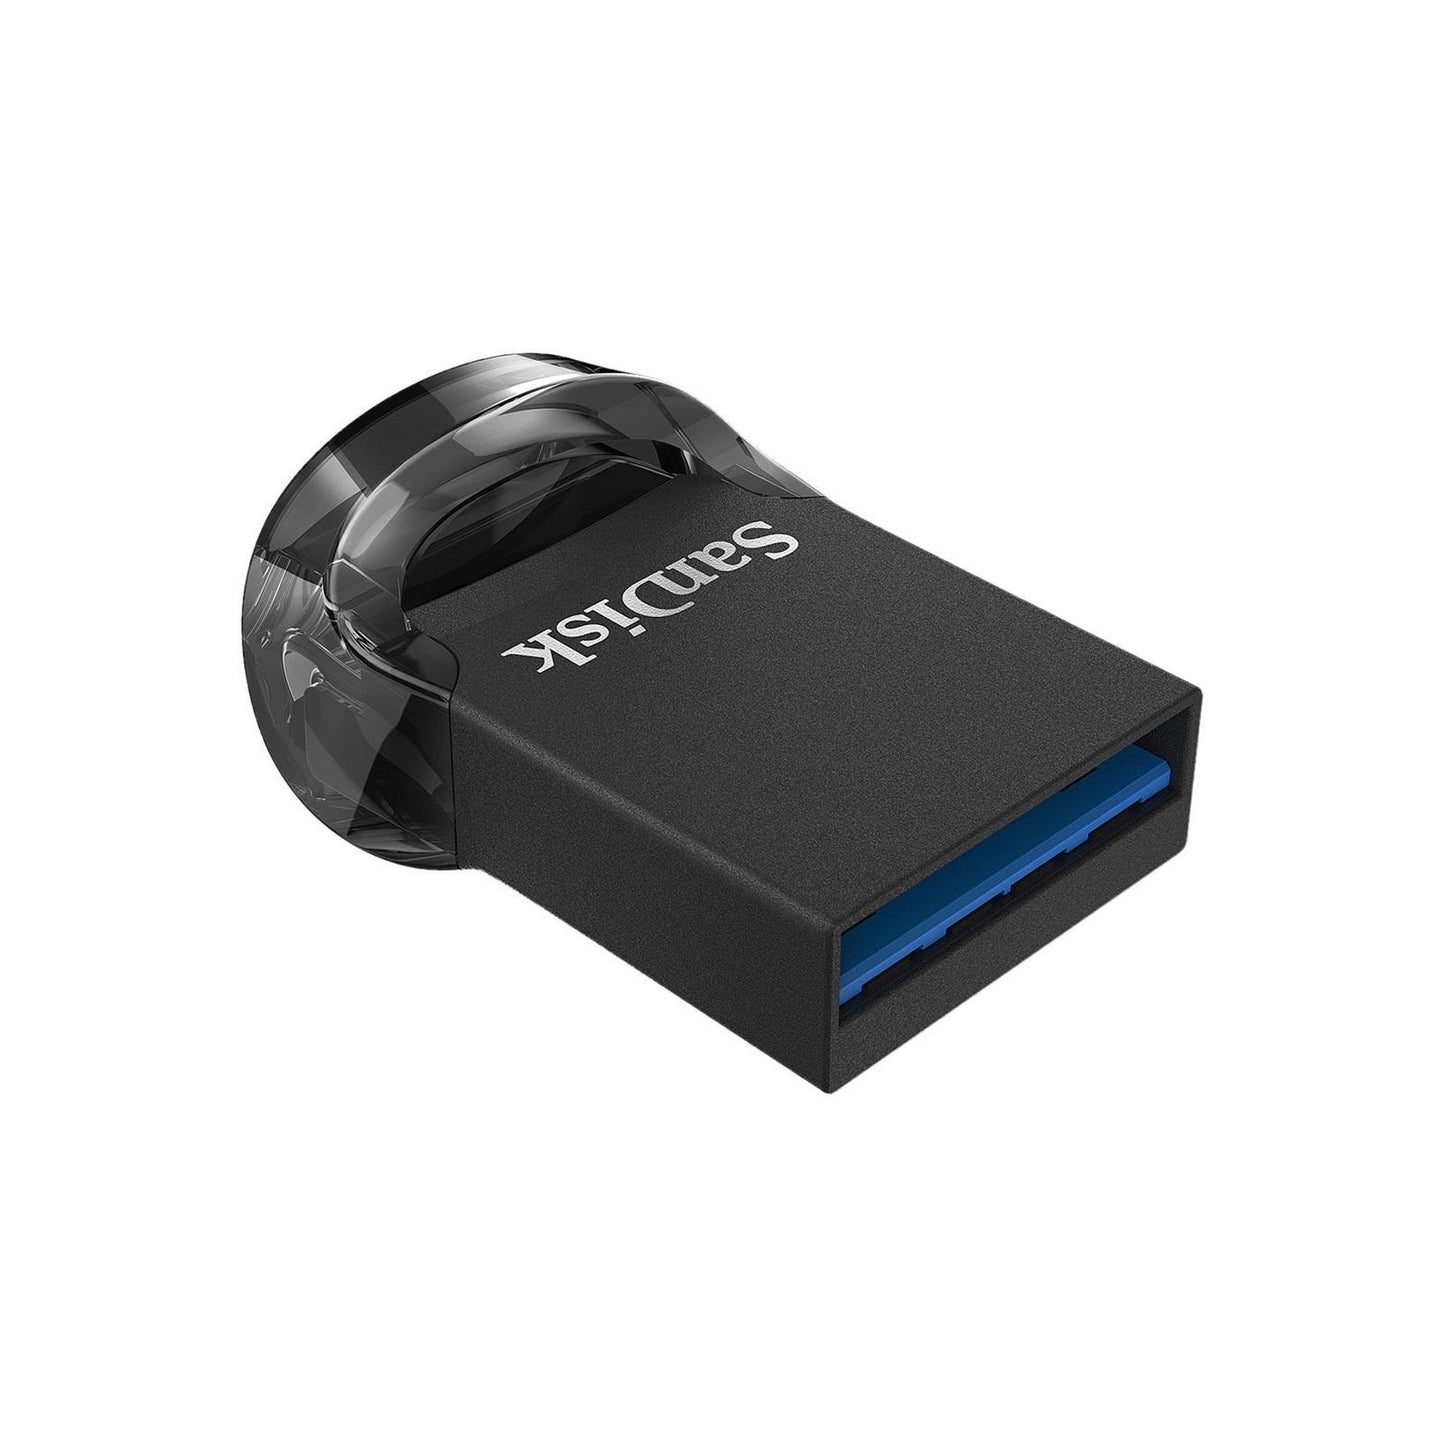 Sandisk Ultra Fit 32GB 130MB/S USB 3.1 Flash Drive Memory Stick Pen PC MAC